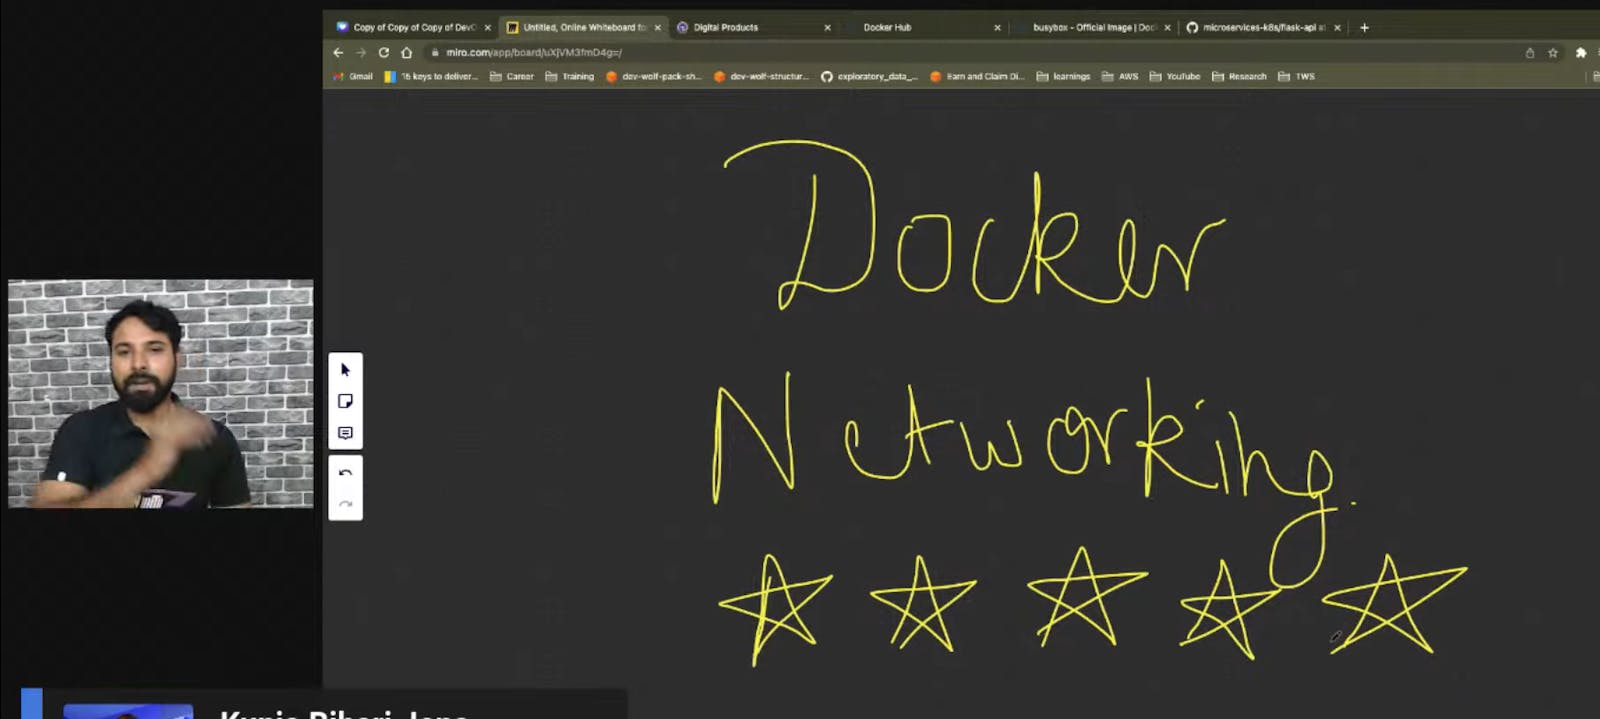 🚀Day 11- Docker Networking in Detail